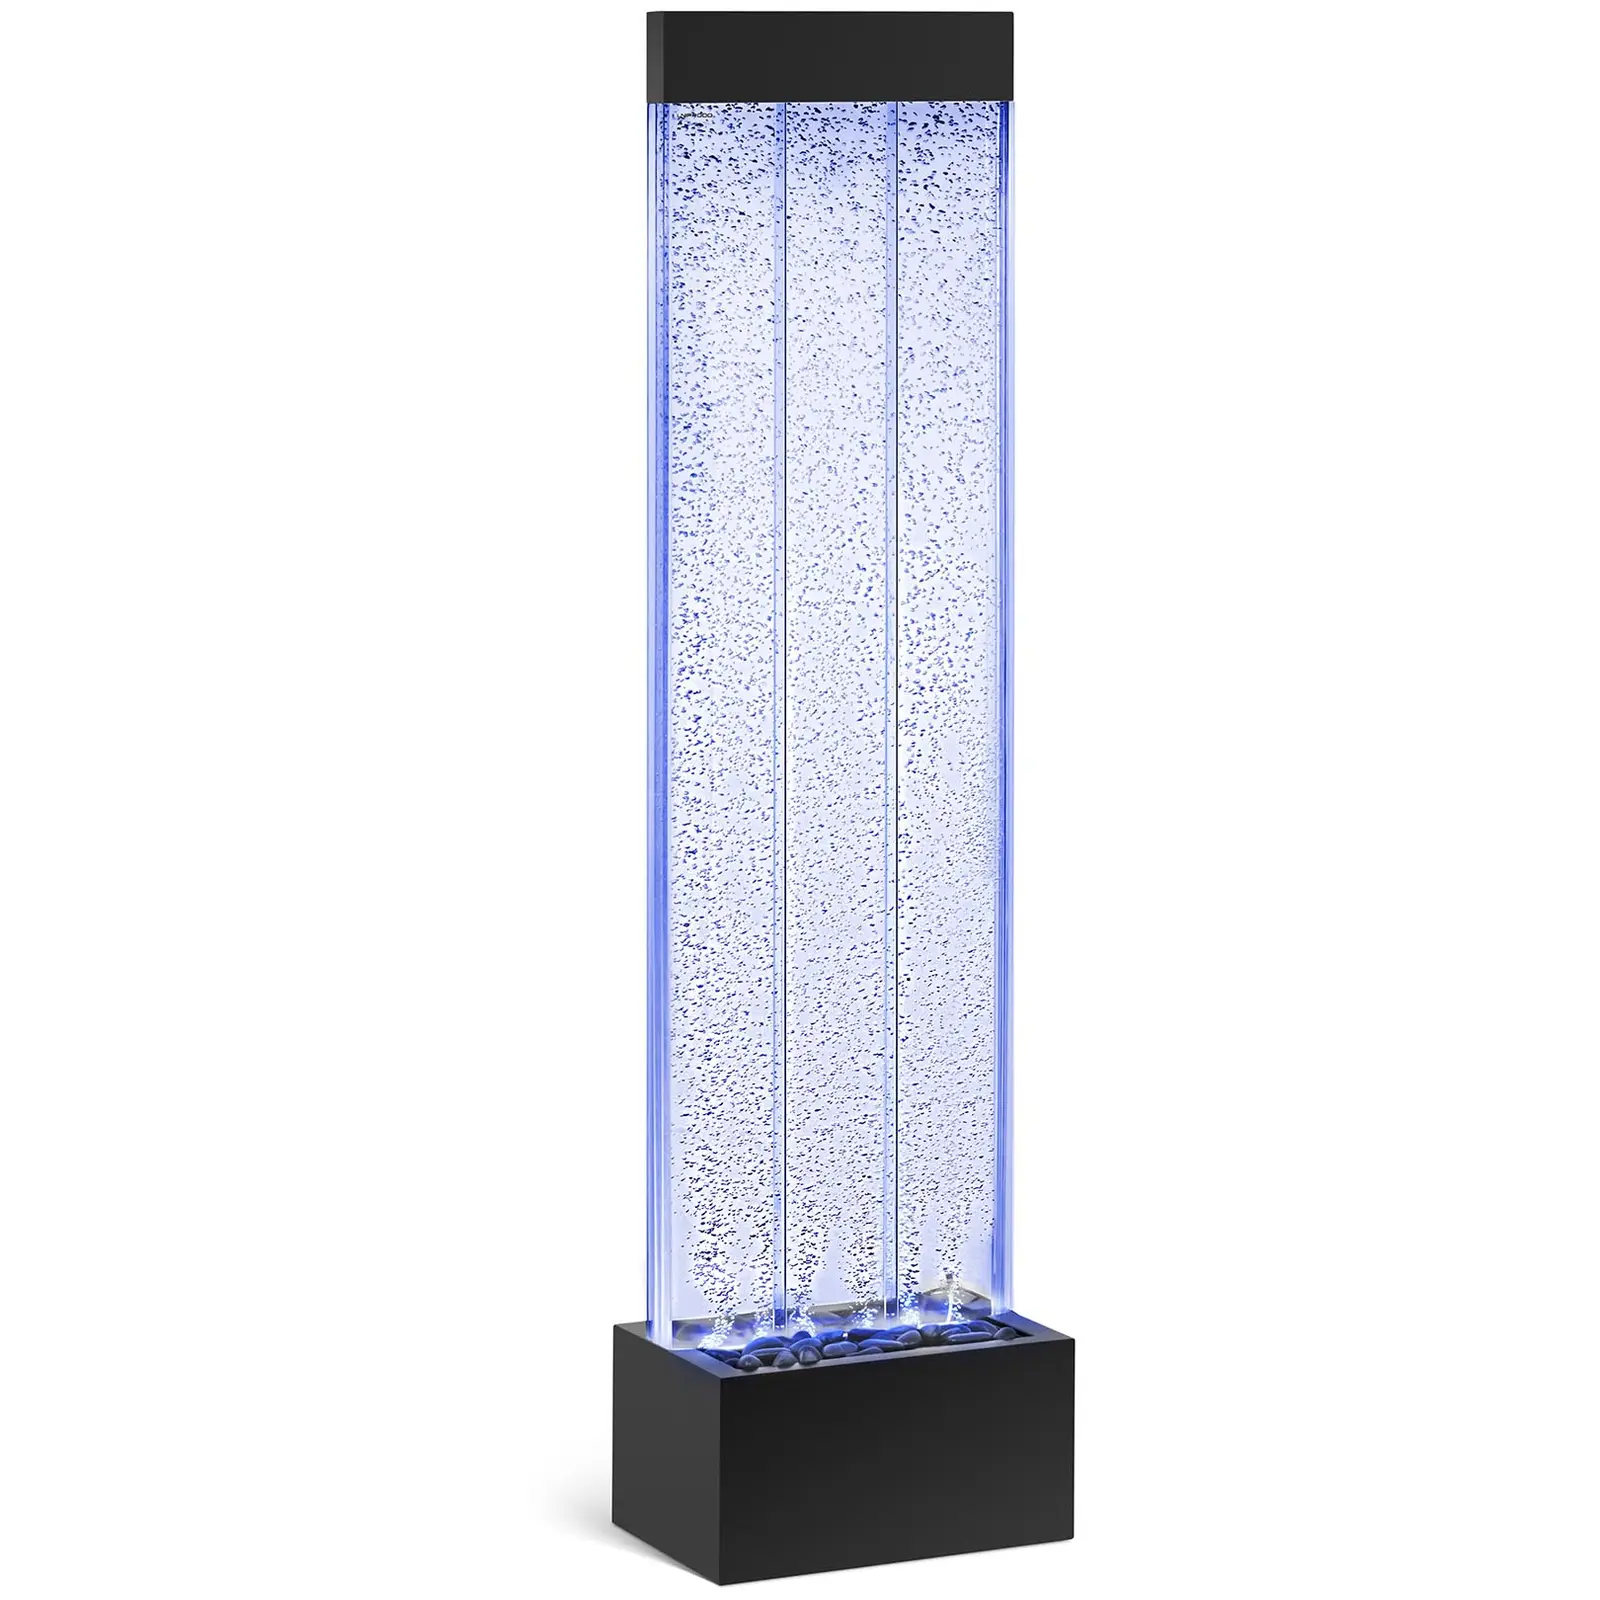 LED vodeni zid - 390 x 260 x 200 mm